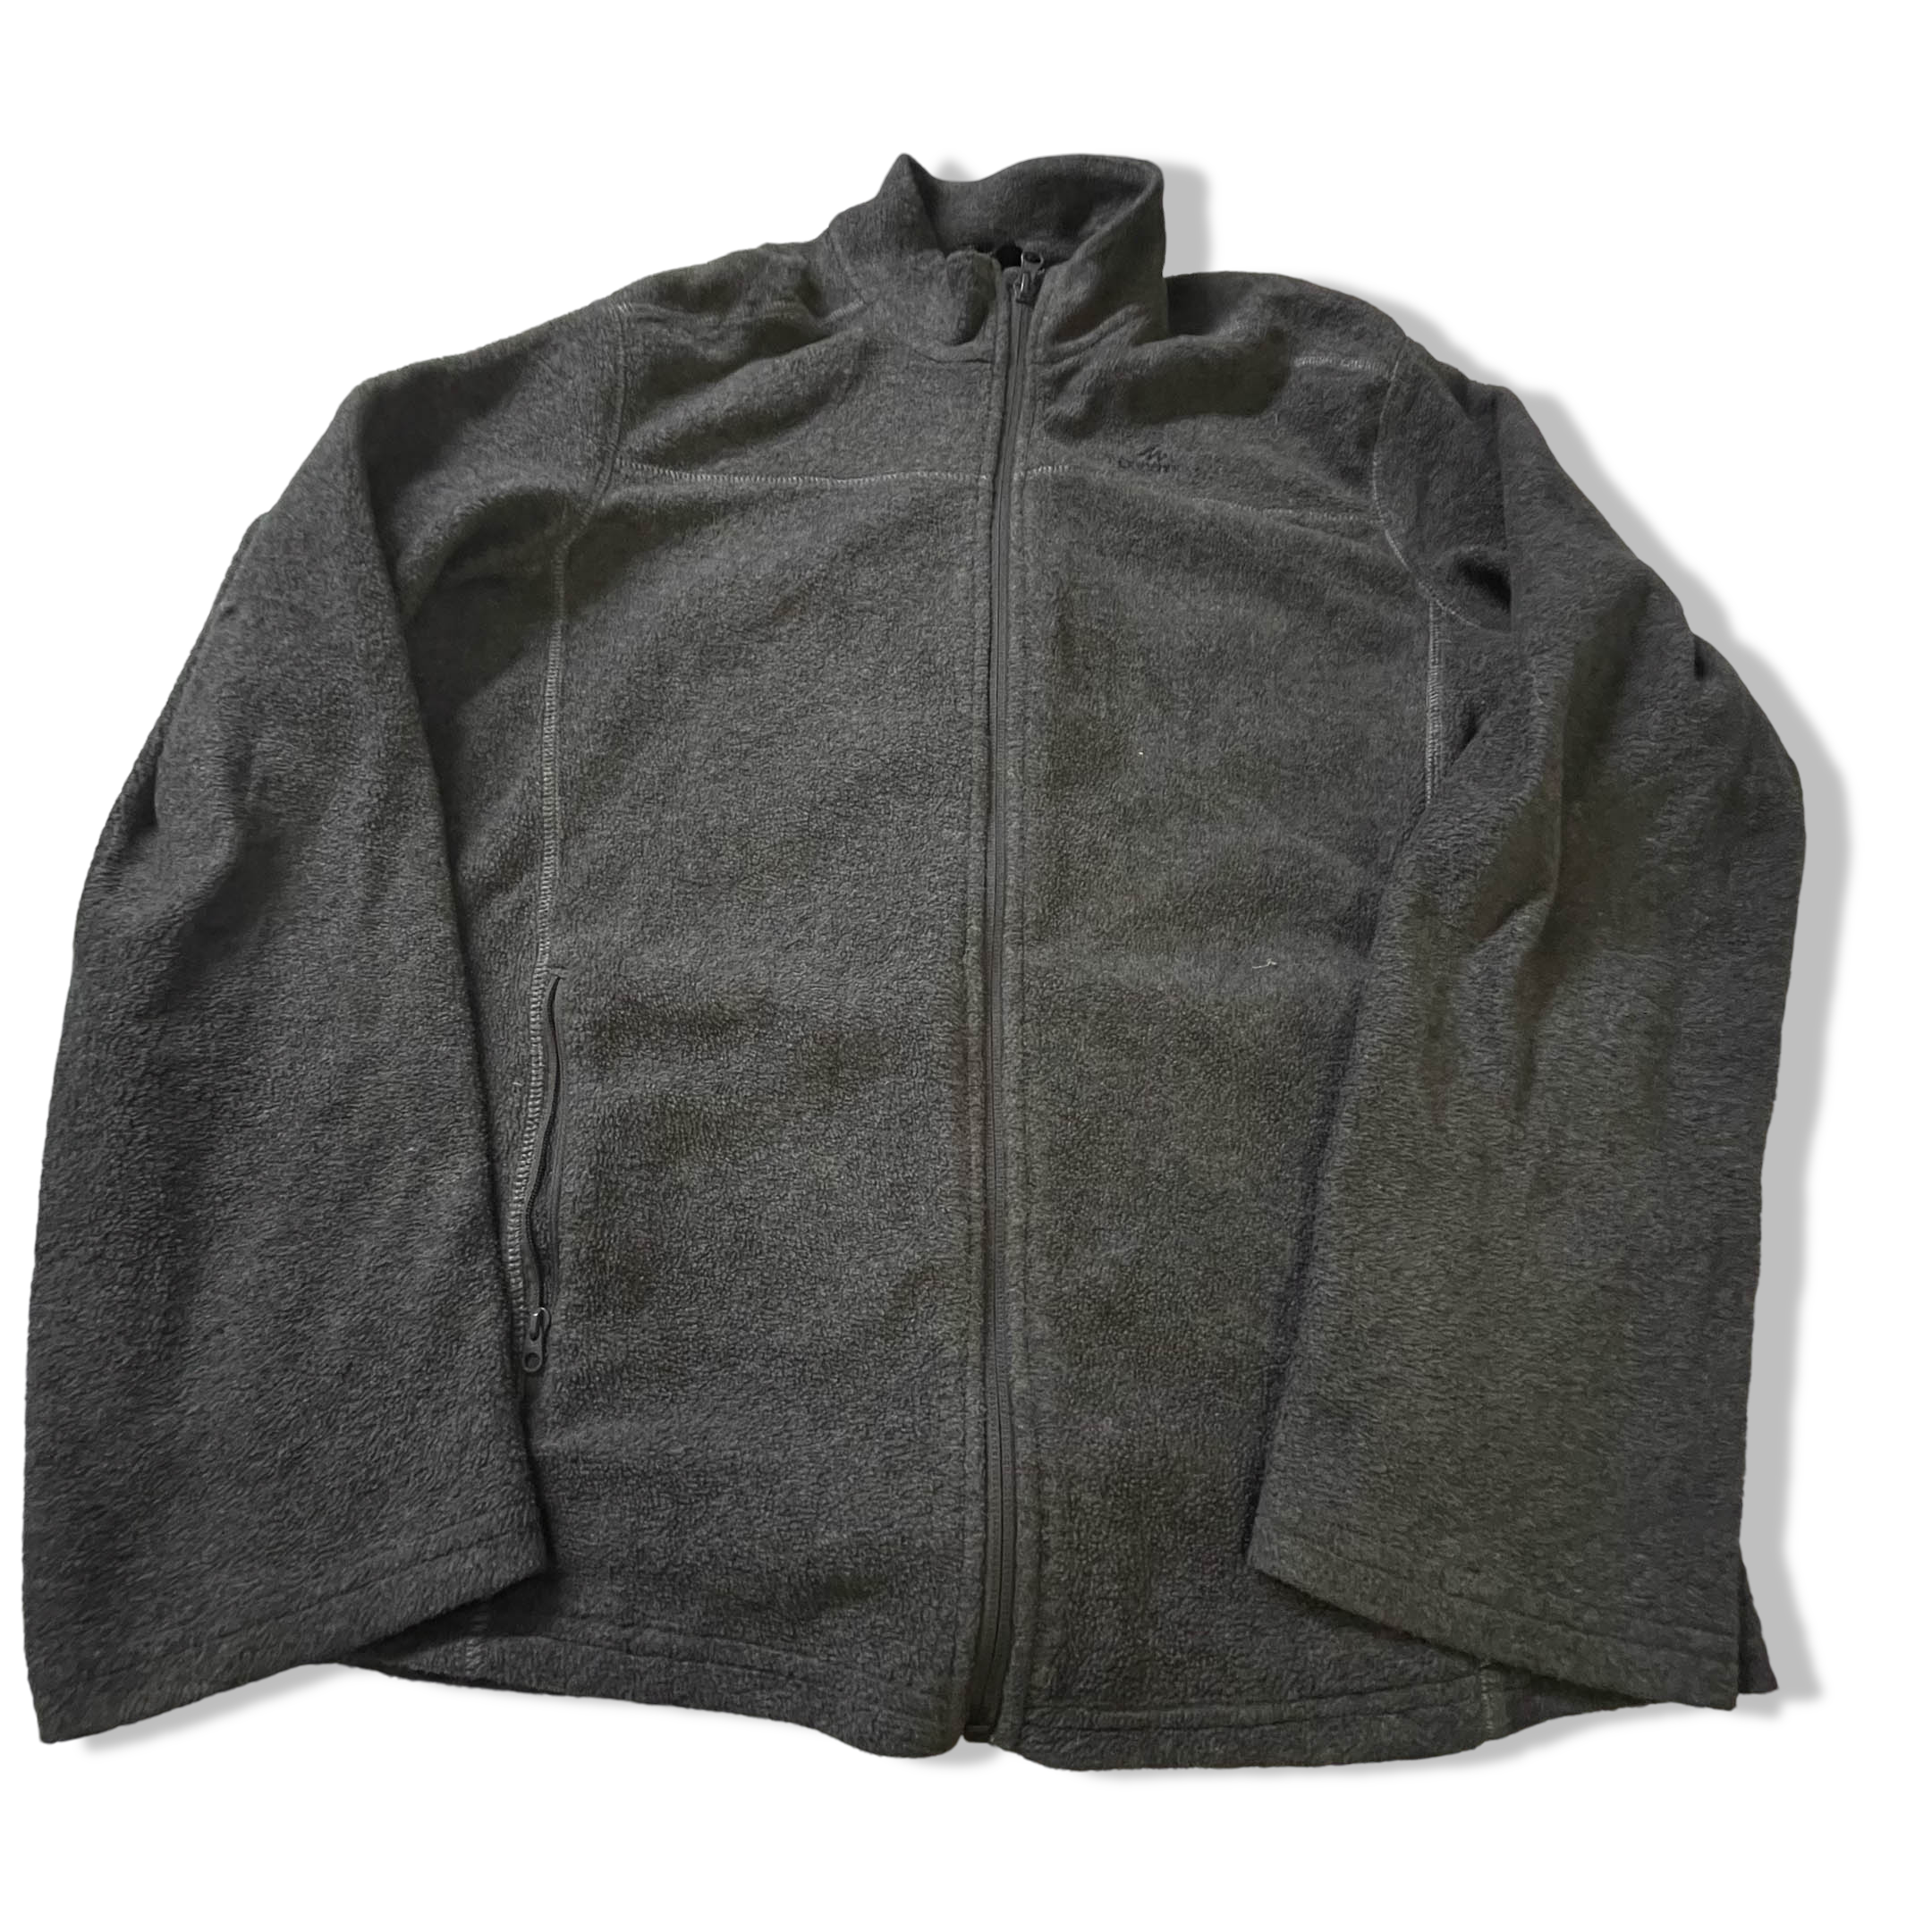 Vintage Decathlon Men's fleece grey full zip high neck jacket in M|L30W21|3833